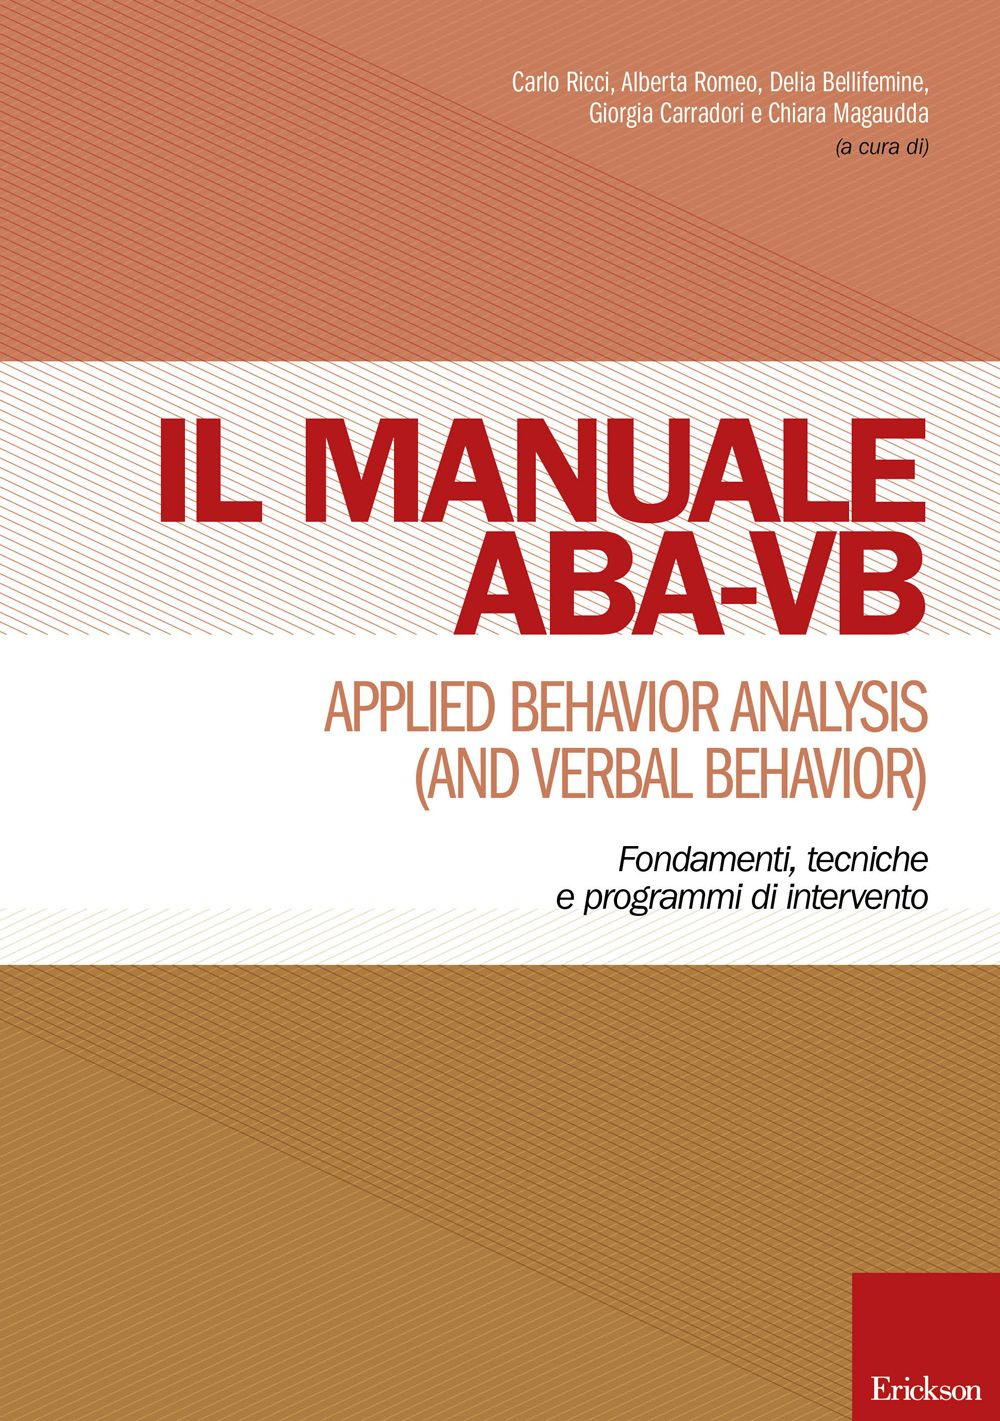 Manuale ABA-VB. Applied behavior analysis and verbal behavior. Fondamenti, tecniche e programmi di intervento